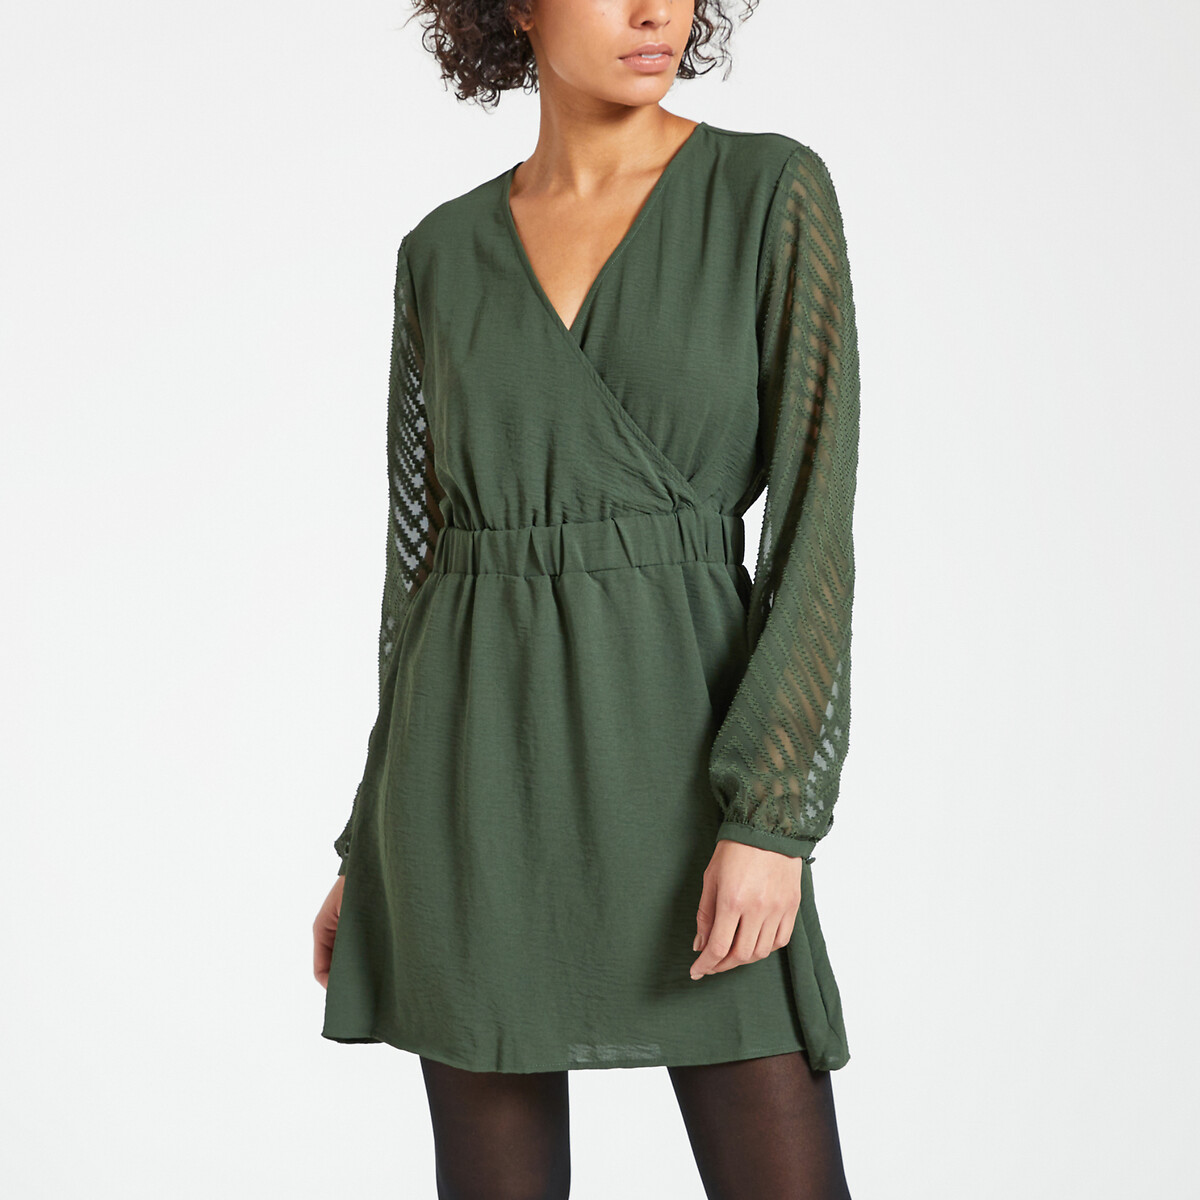 платье с v-образным вырезом длинные рукава xl зеленый